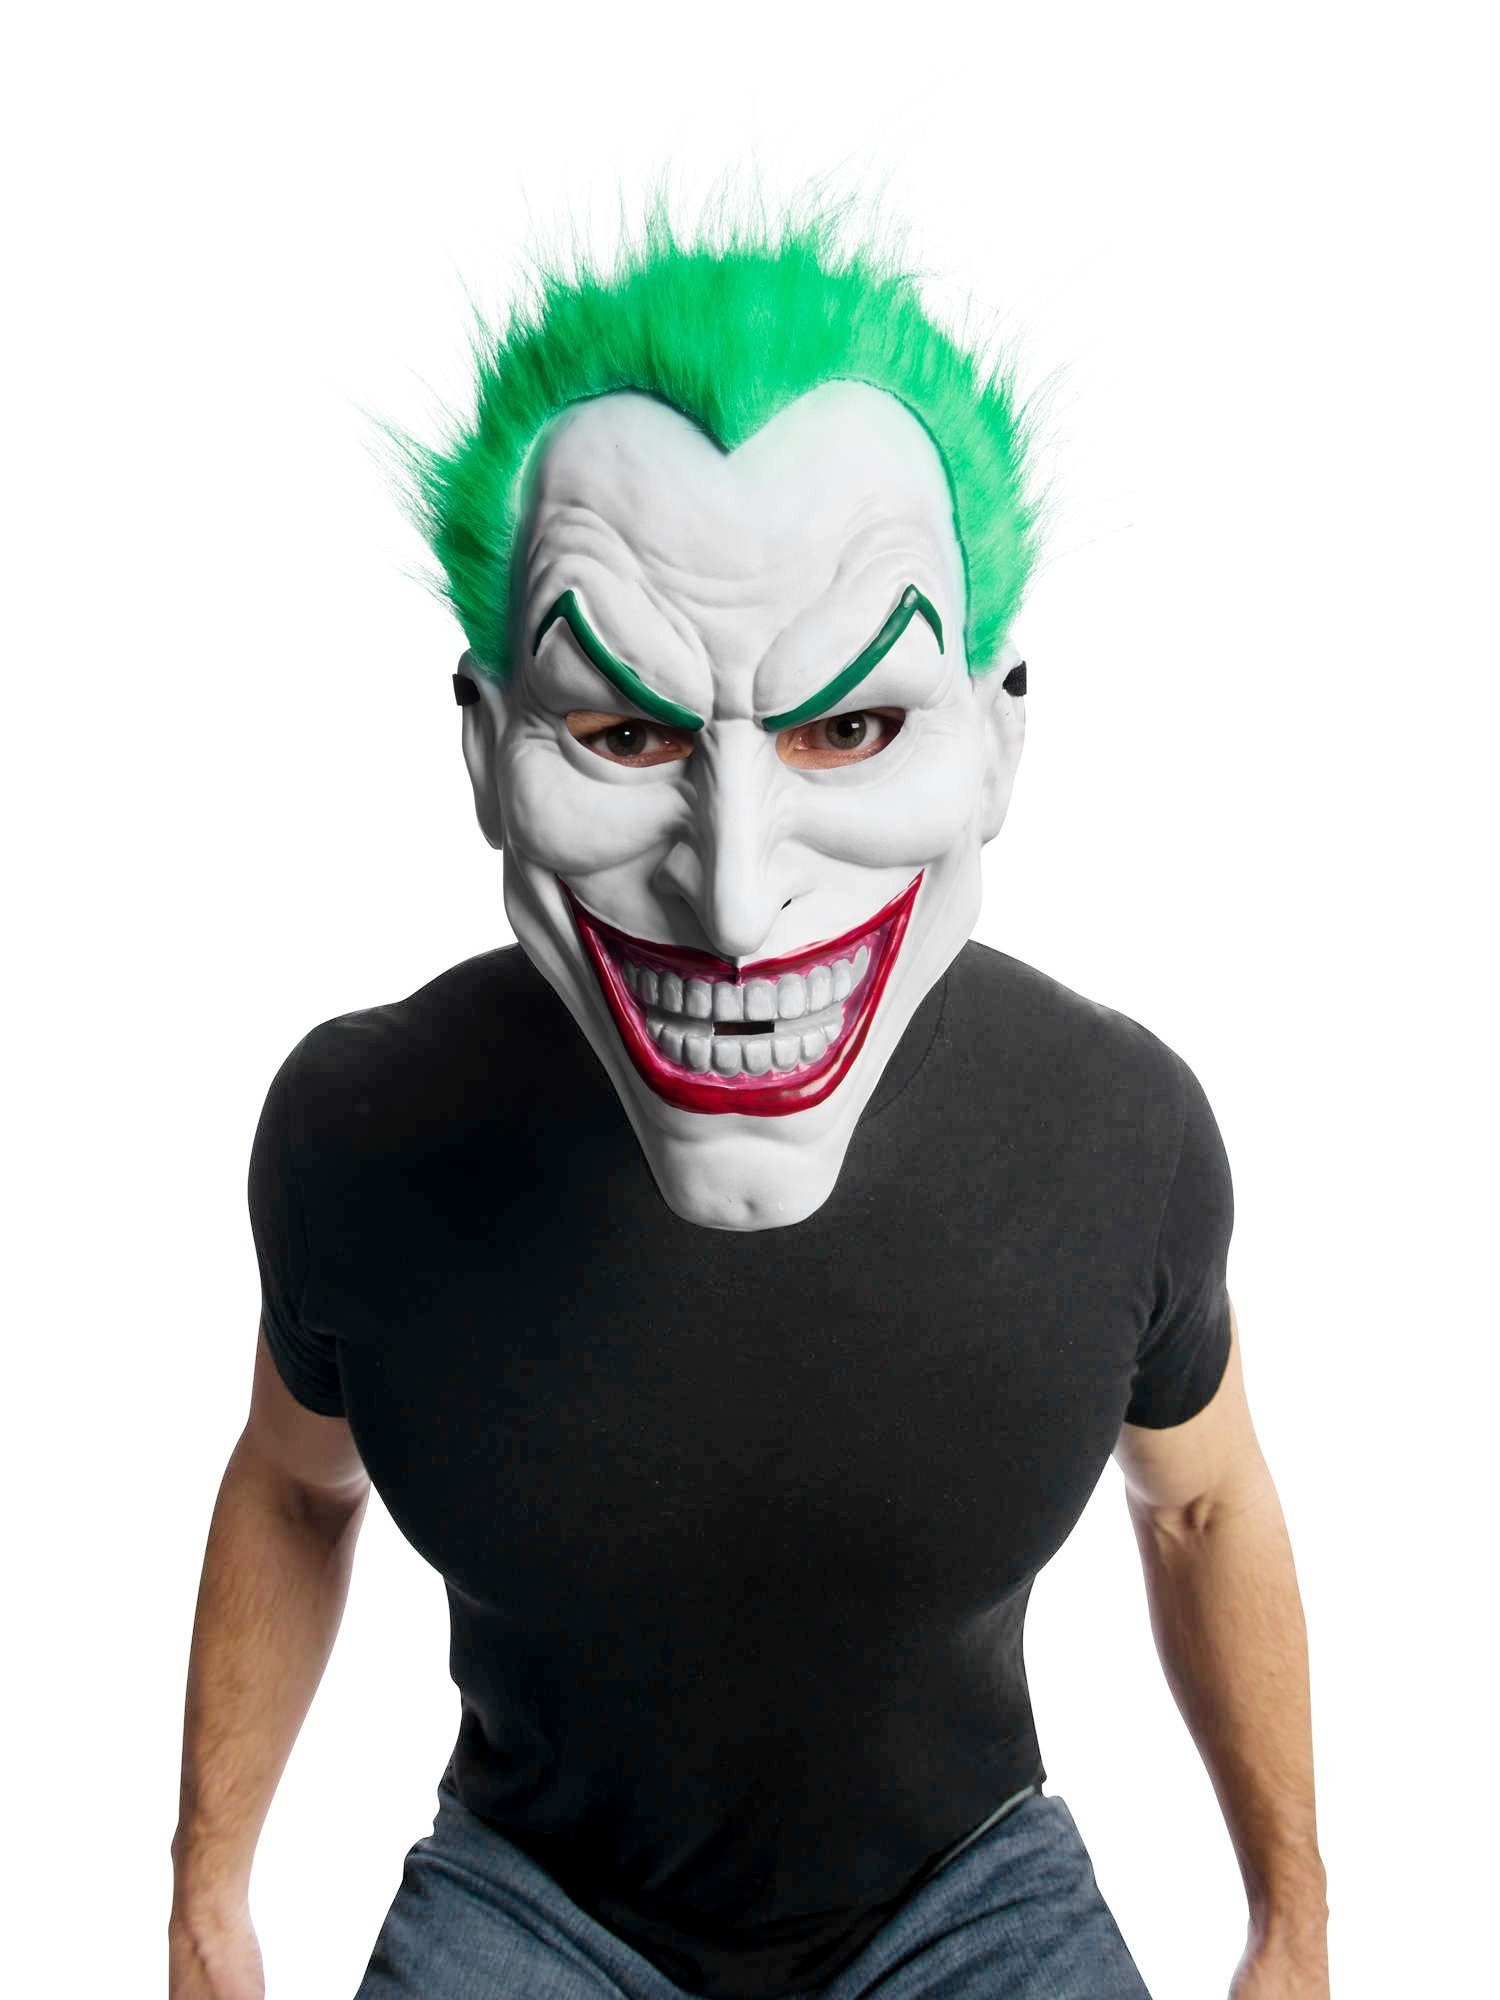 Metamorph Verkleidungsmaske Joker Riesenmaske aus Kunststoff, Große Maske für ein großes Ego